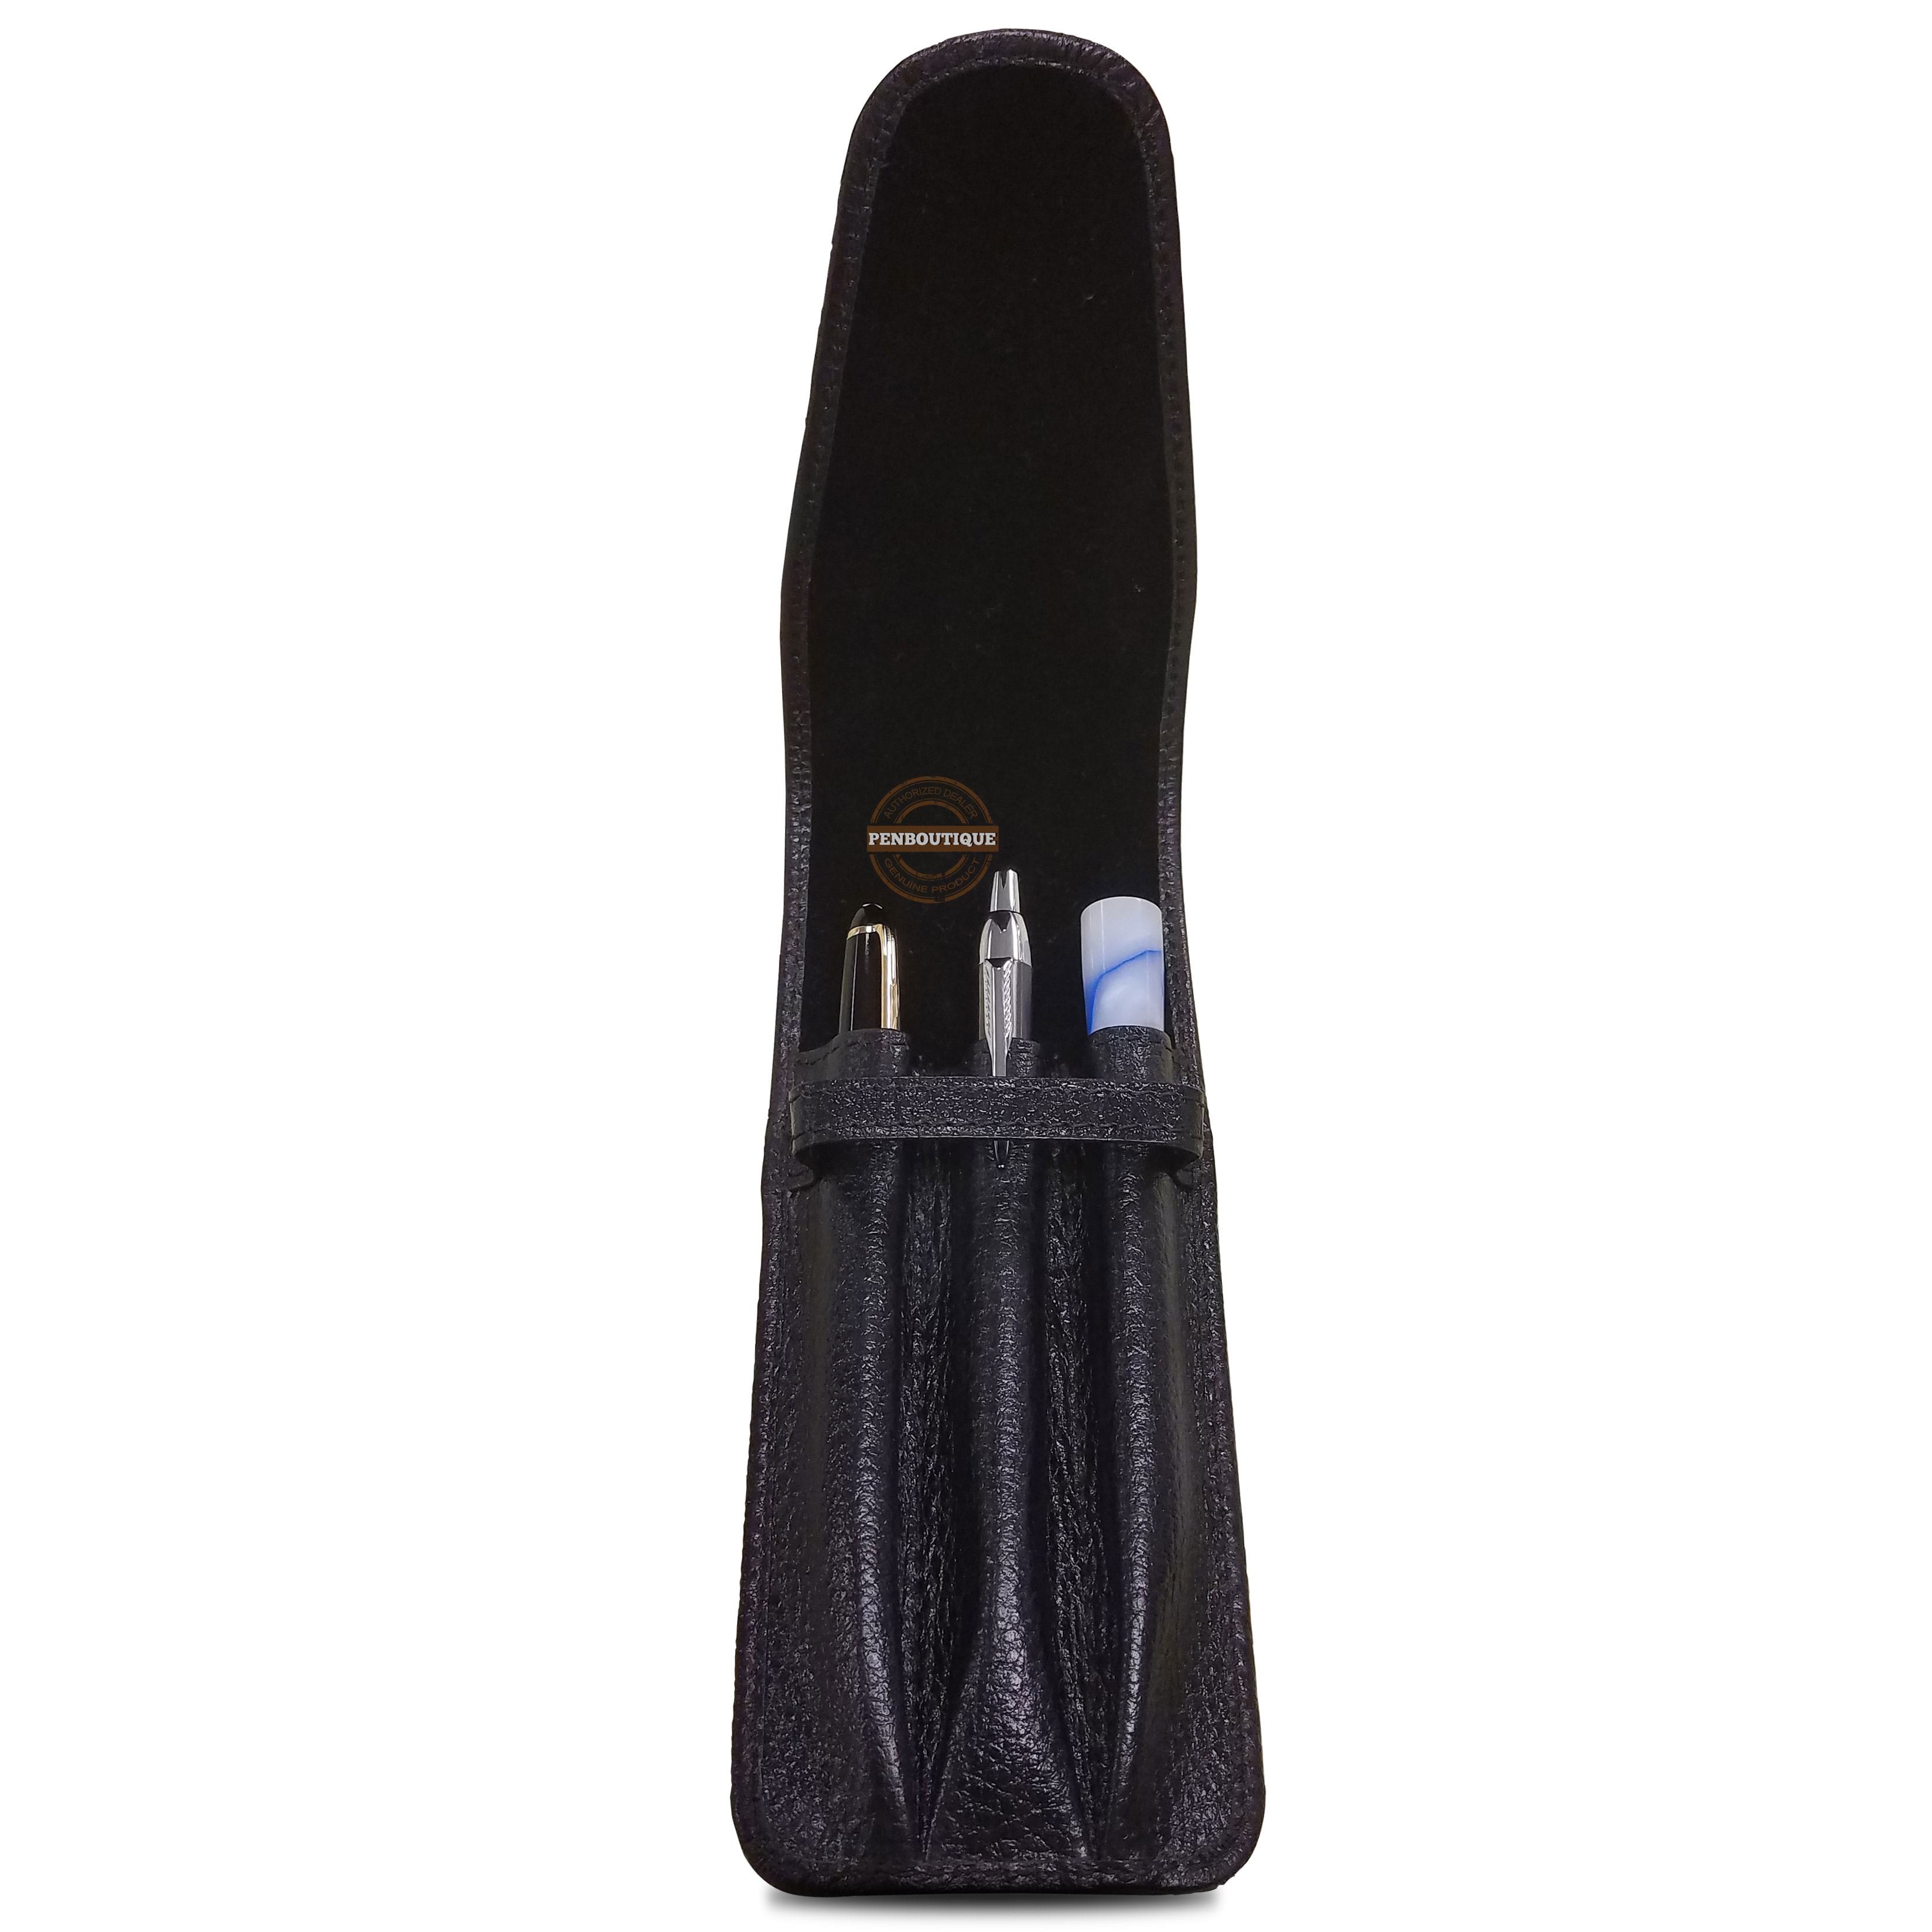 Yak Leather Premium Leather Three Pen Pouch with Flap - Black-Pen Boutique Ltd